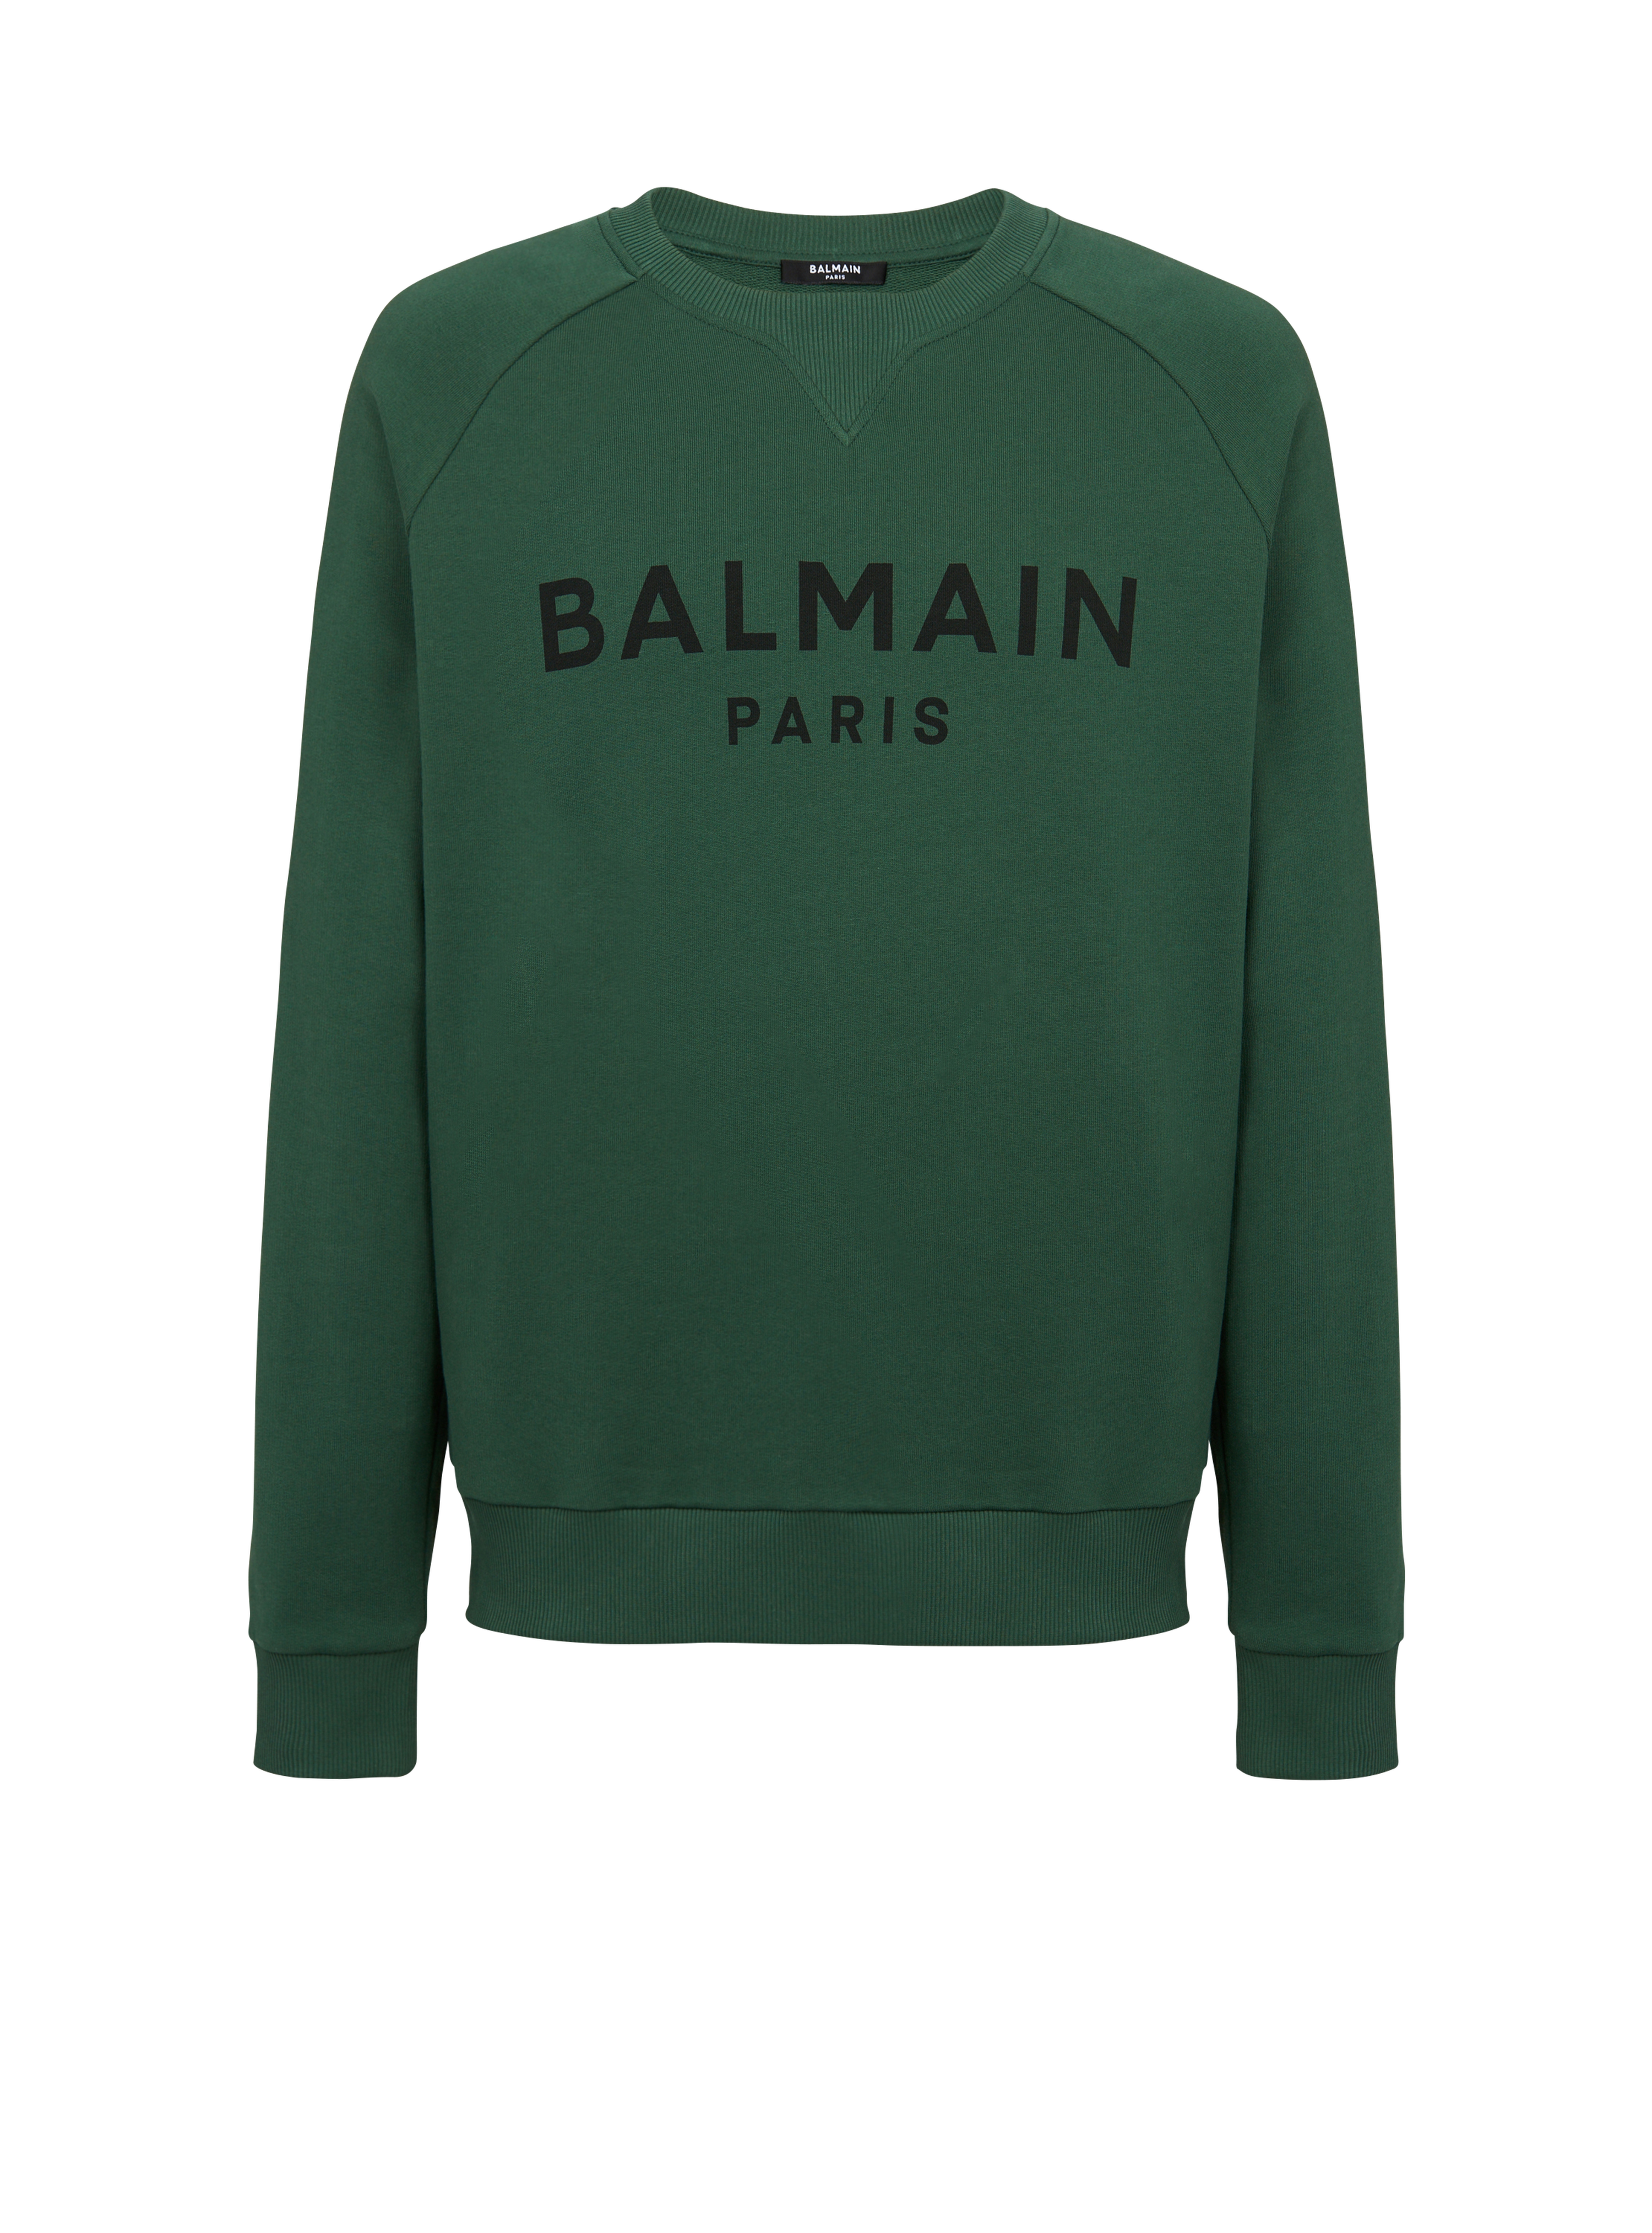 コットン スウェットシャツ ブラックBalmain Parisロゴプリント, 緑